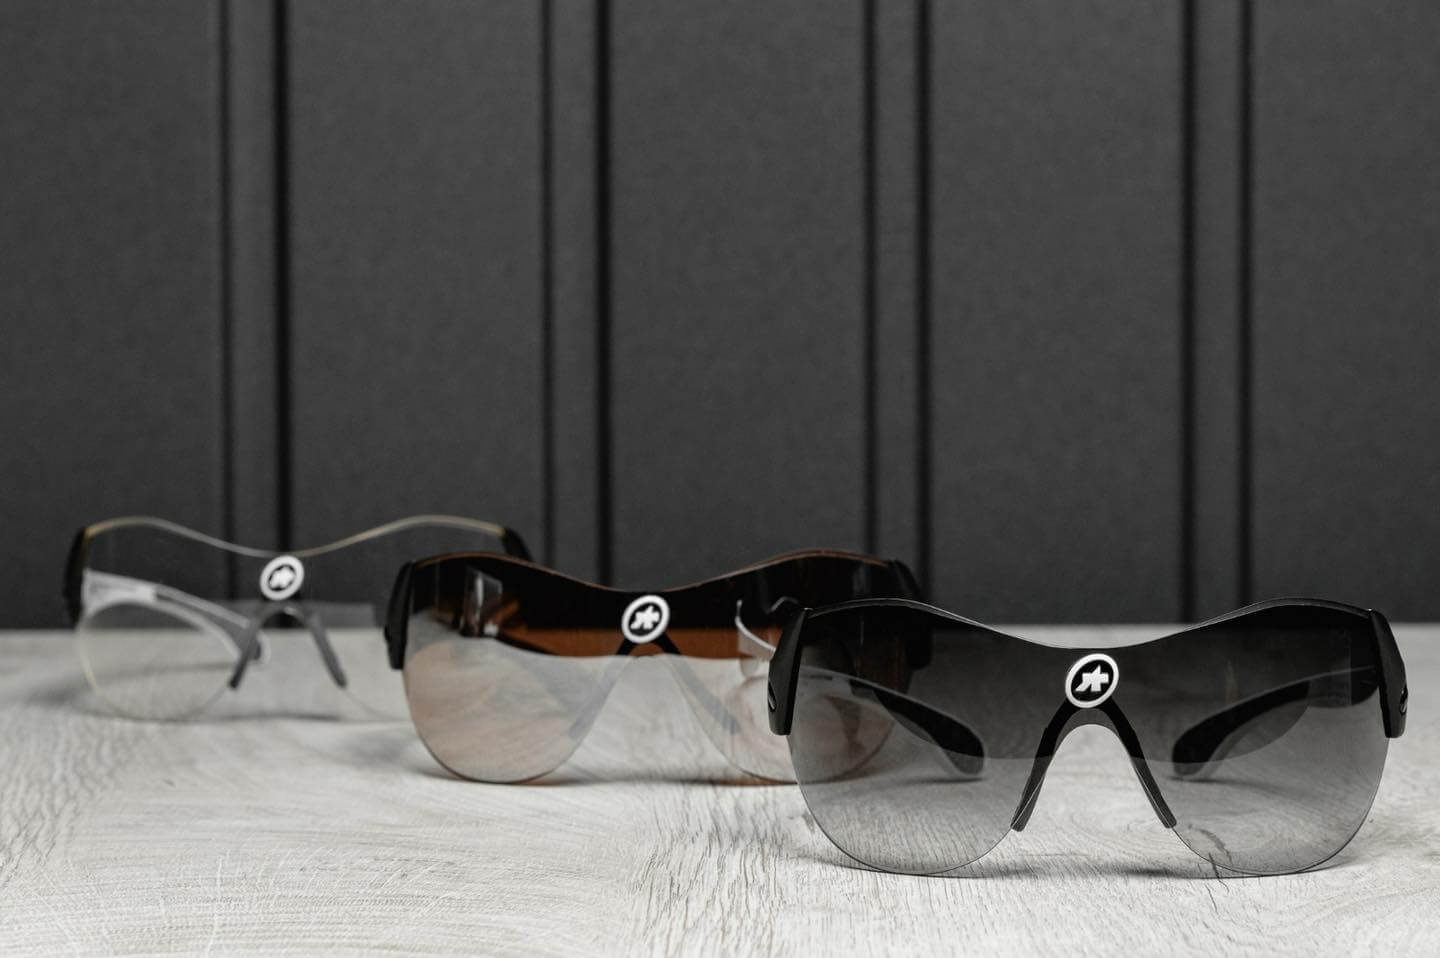 Przedstawiamy okulary marki ASSOS model Zegho.